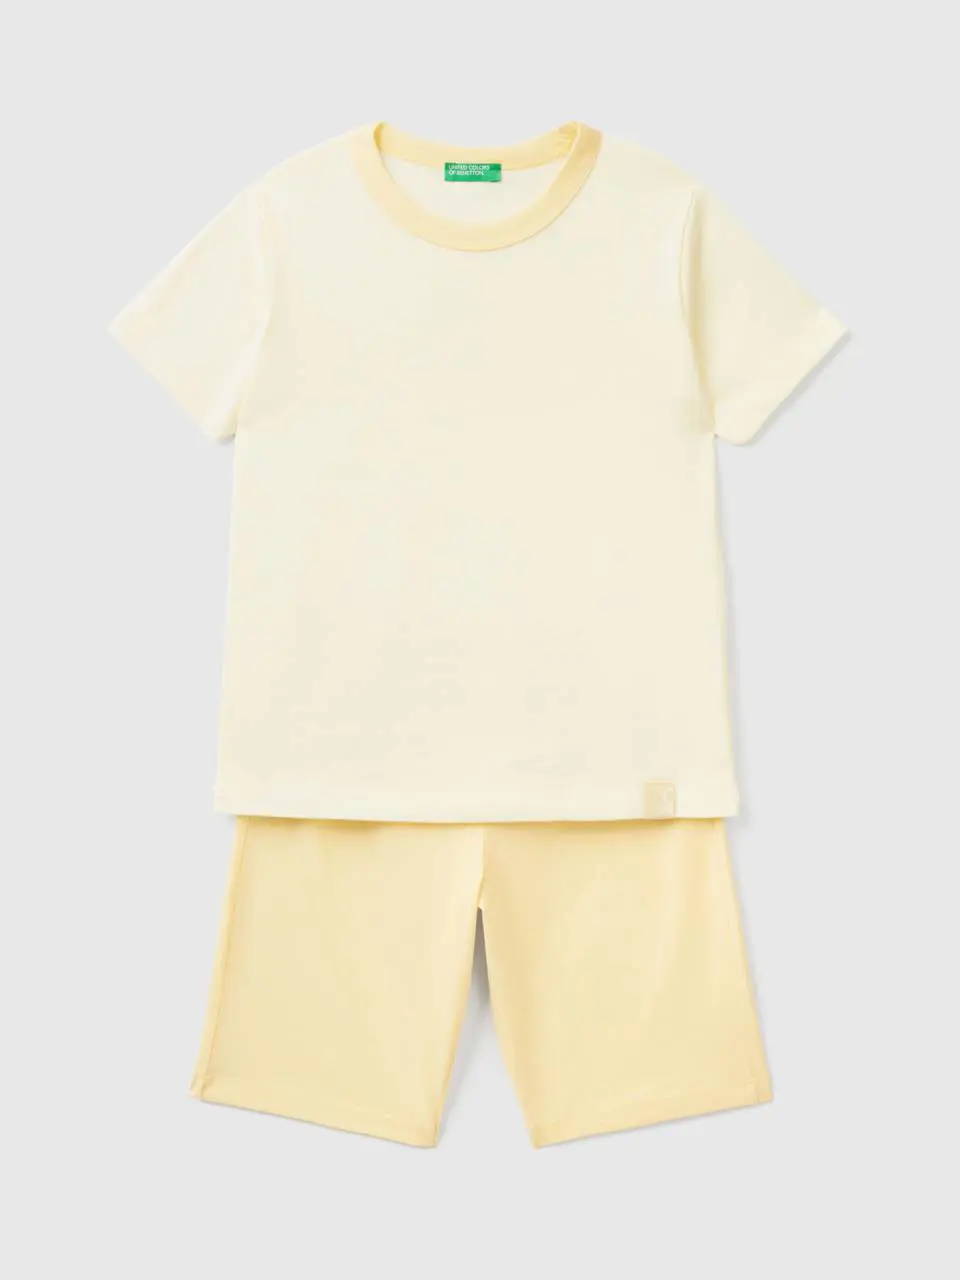 Benetton short pyjamas in lightweight cotton. 1